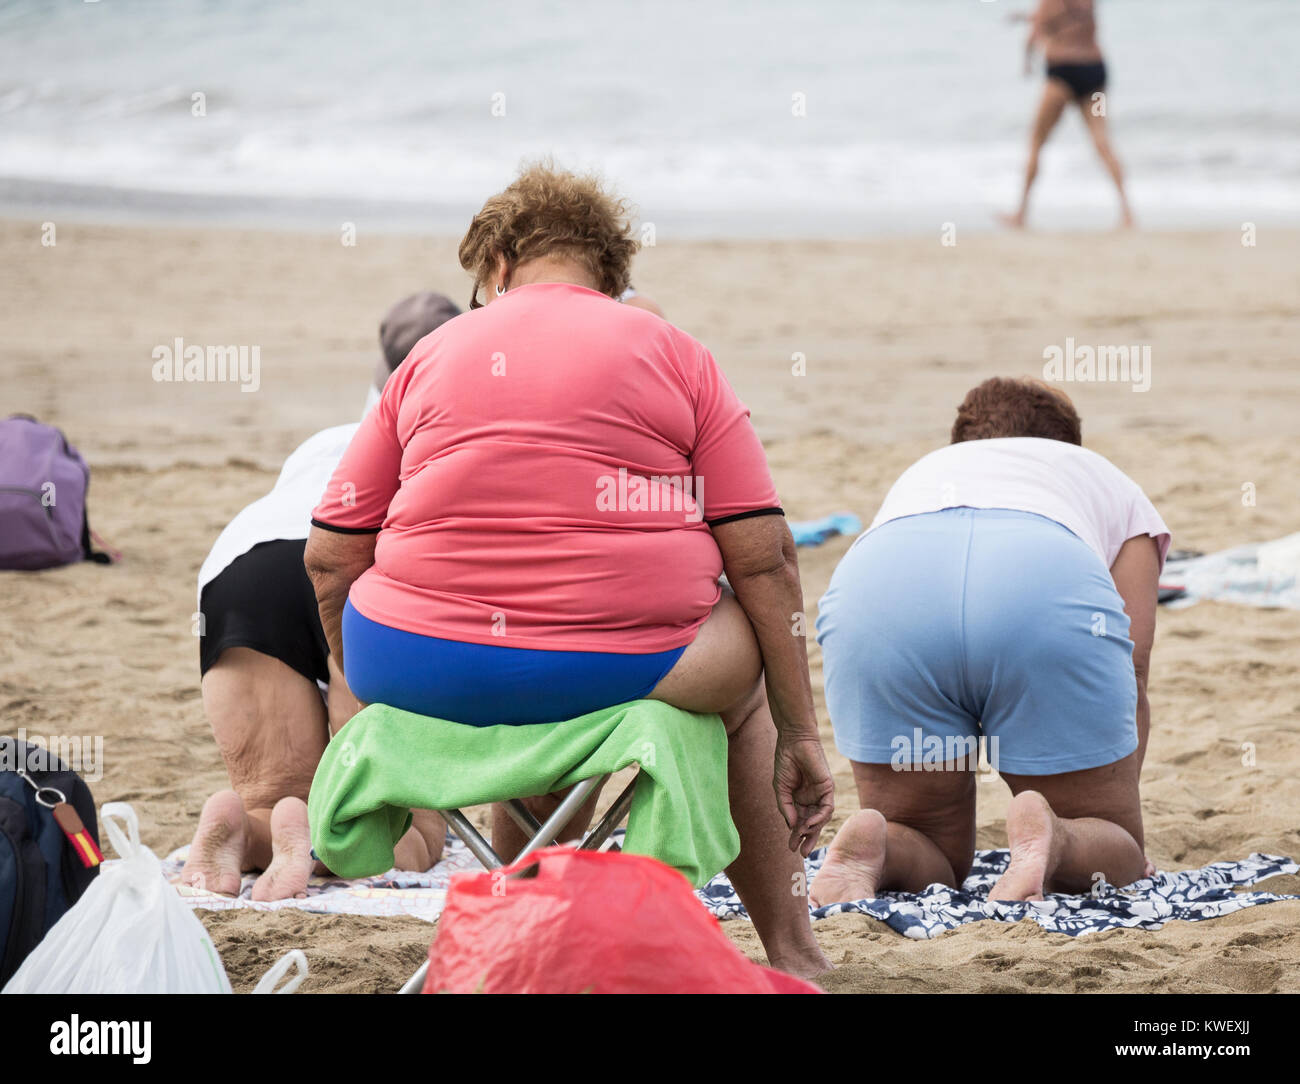 Eine Gruppe älterer Frauen vor Ort bei Ihrer täglichen Ausübung Klasse am Strand Las Canteras in Las Palmas, Gran Canaria, Kanarische Inseln, Spanien. Stockfoto